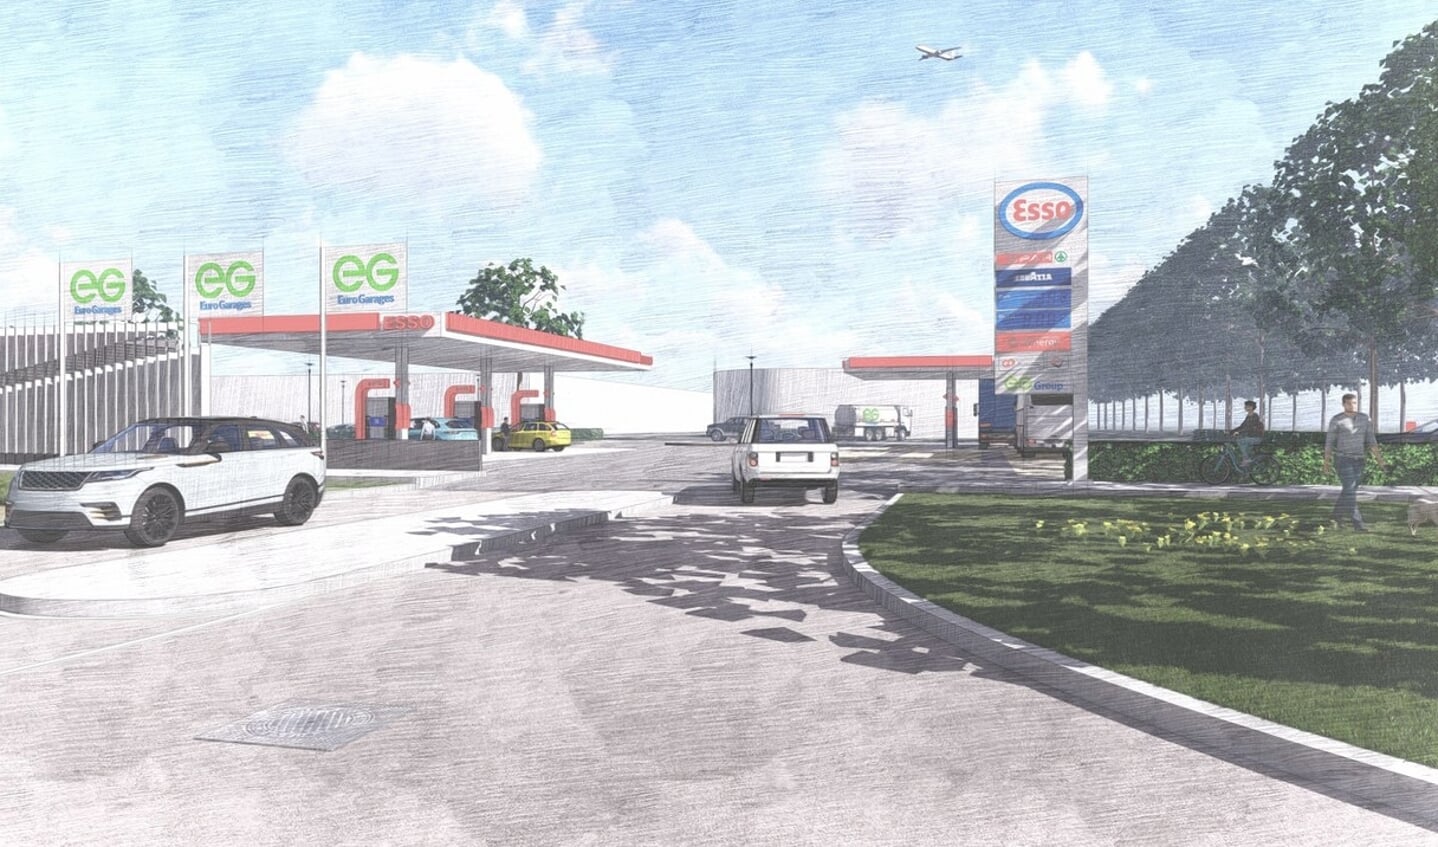 EG bezit meer dan 5400 benzinestations en convenience stores in 9 landen.